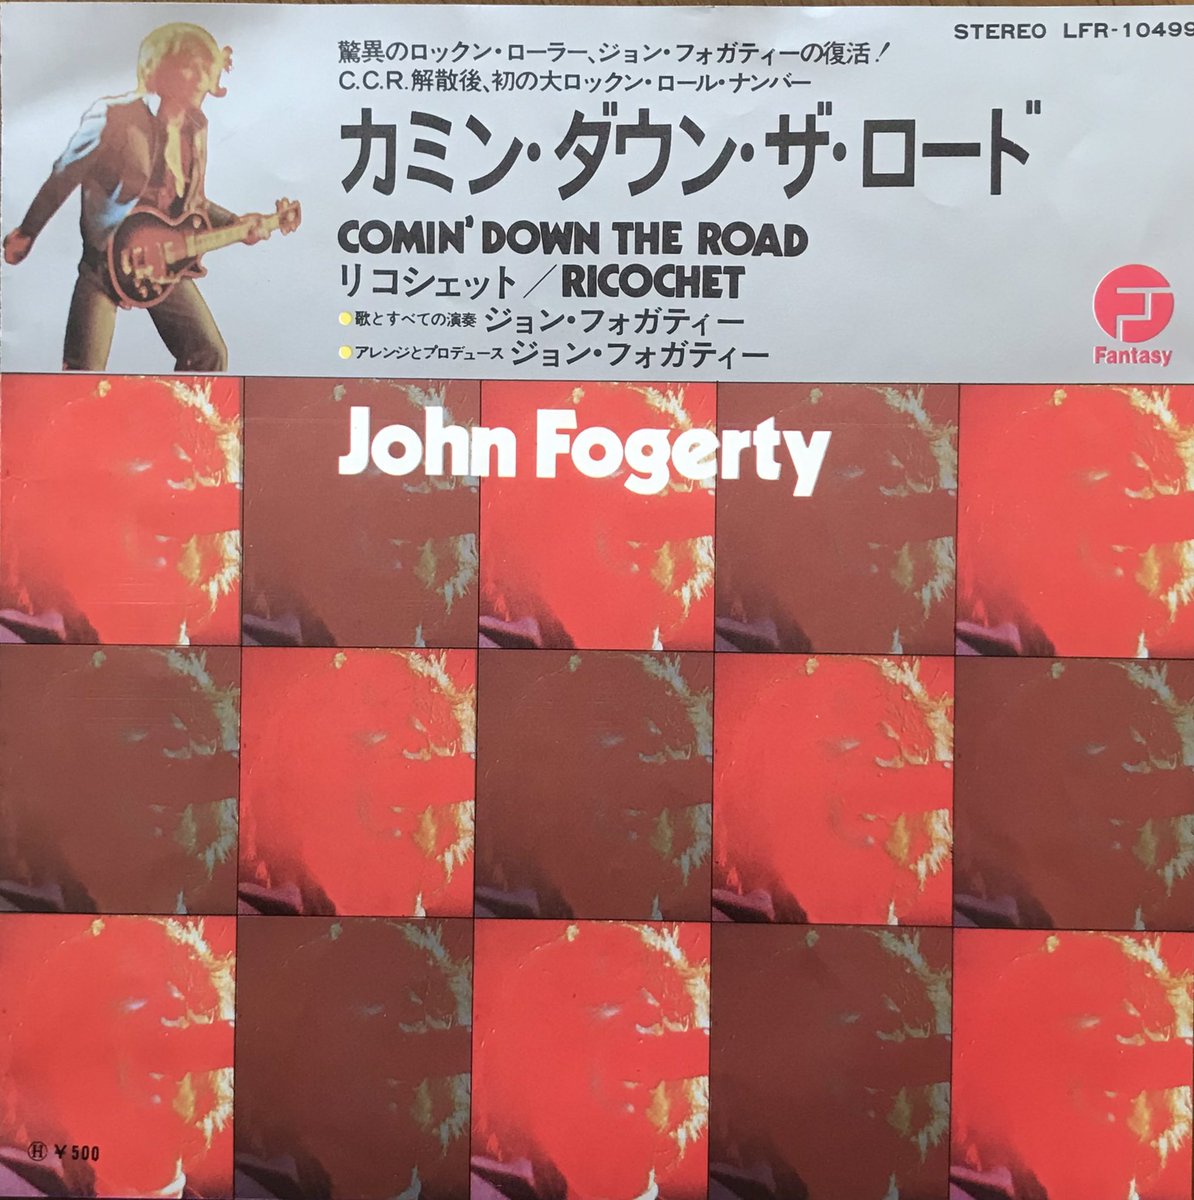 5月28日はジョン・フォガティの誕生日です。
’73年のシングル「カミン・ダウン・ザ・ロード」(Comin' Down The Road) 
#JohnFogerty
youtu.be/MxA-rLQEDdc